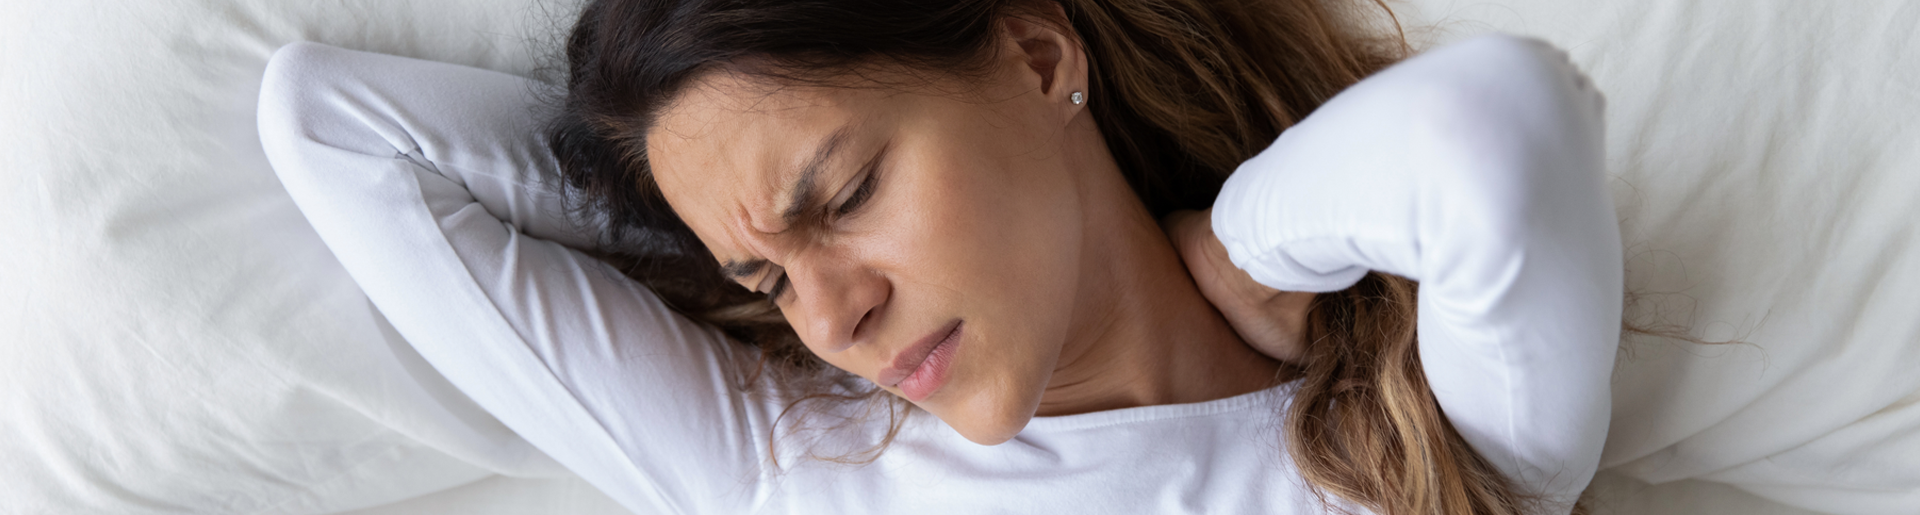 Болит шея после сна, что делать?